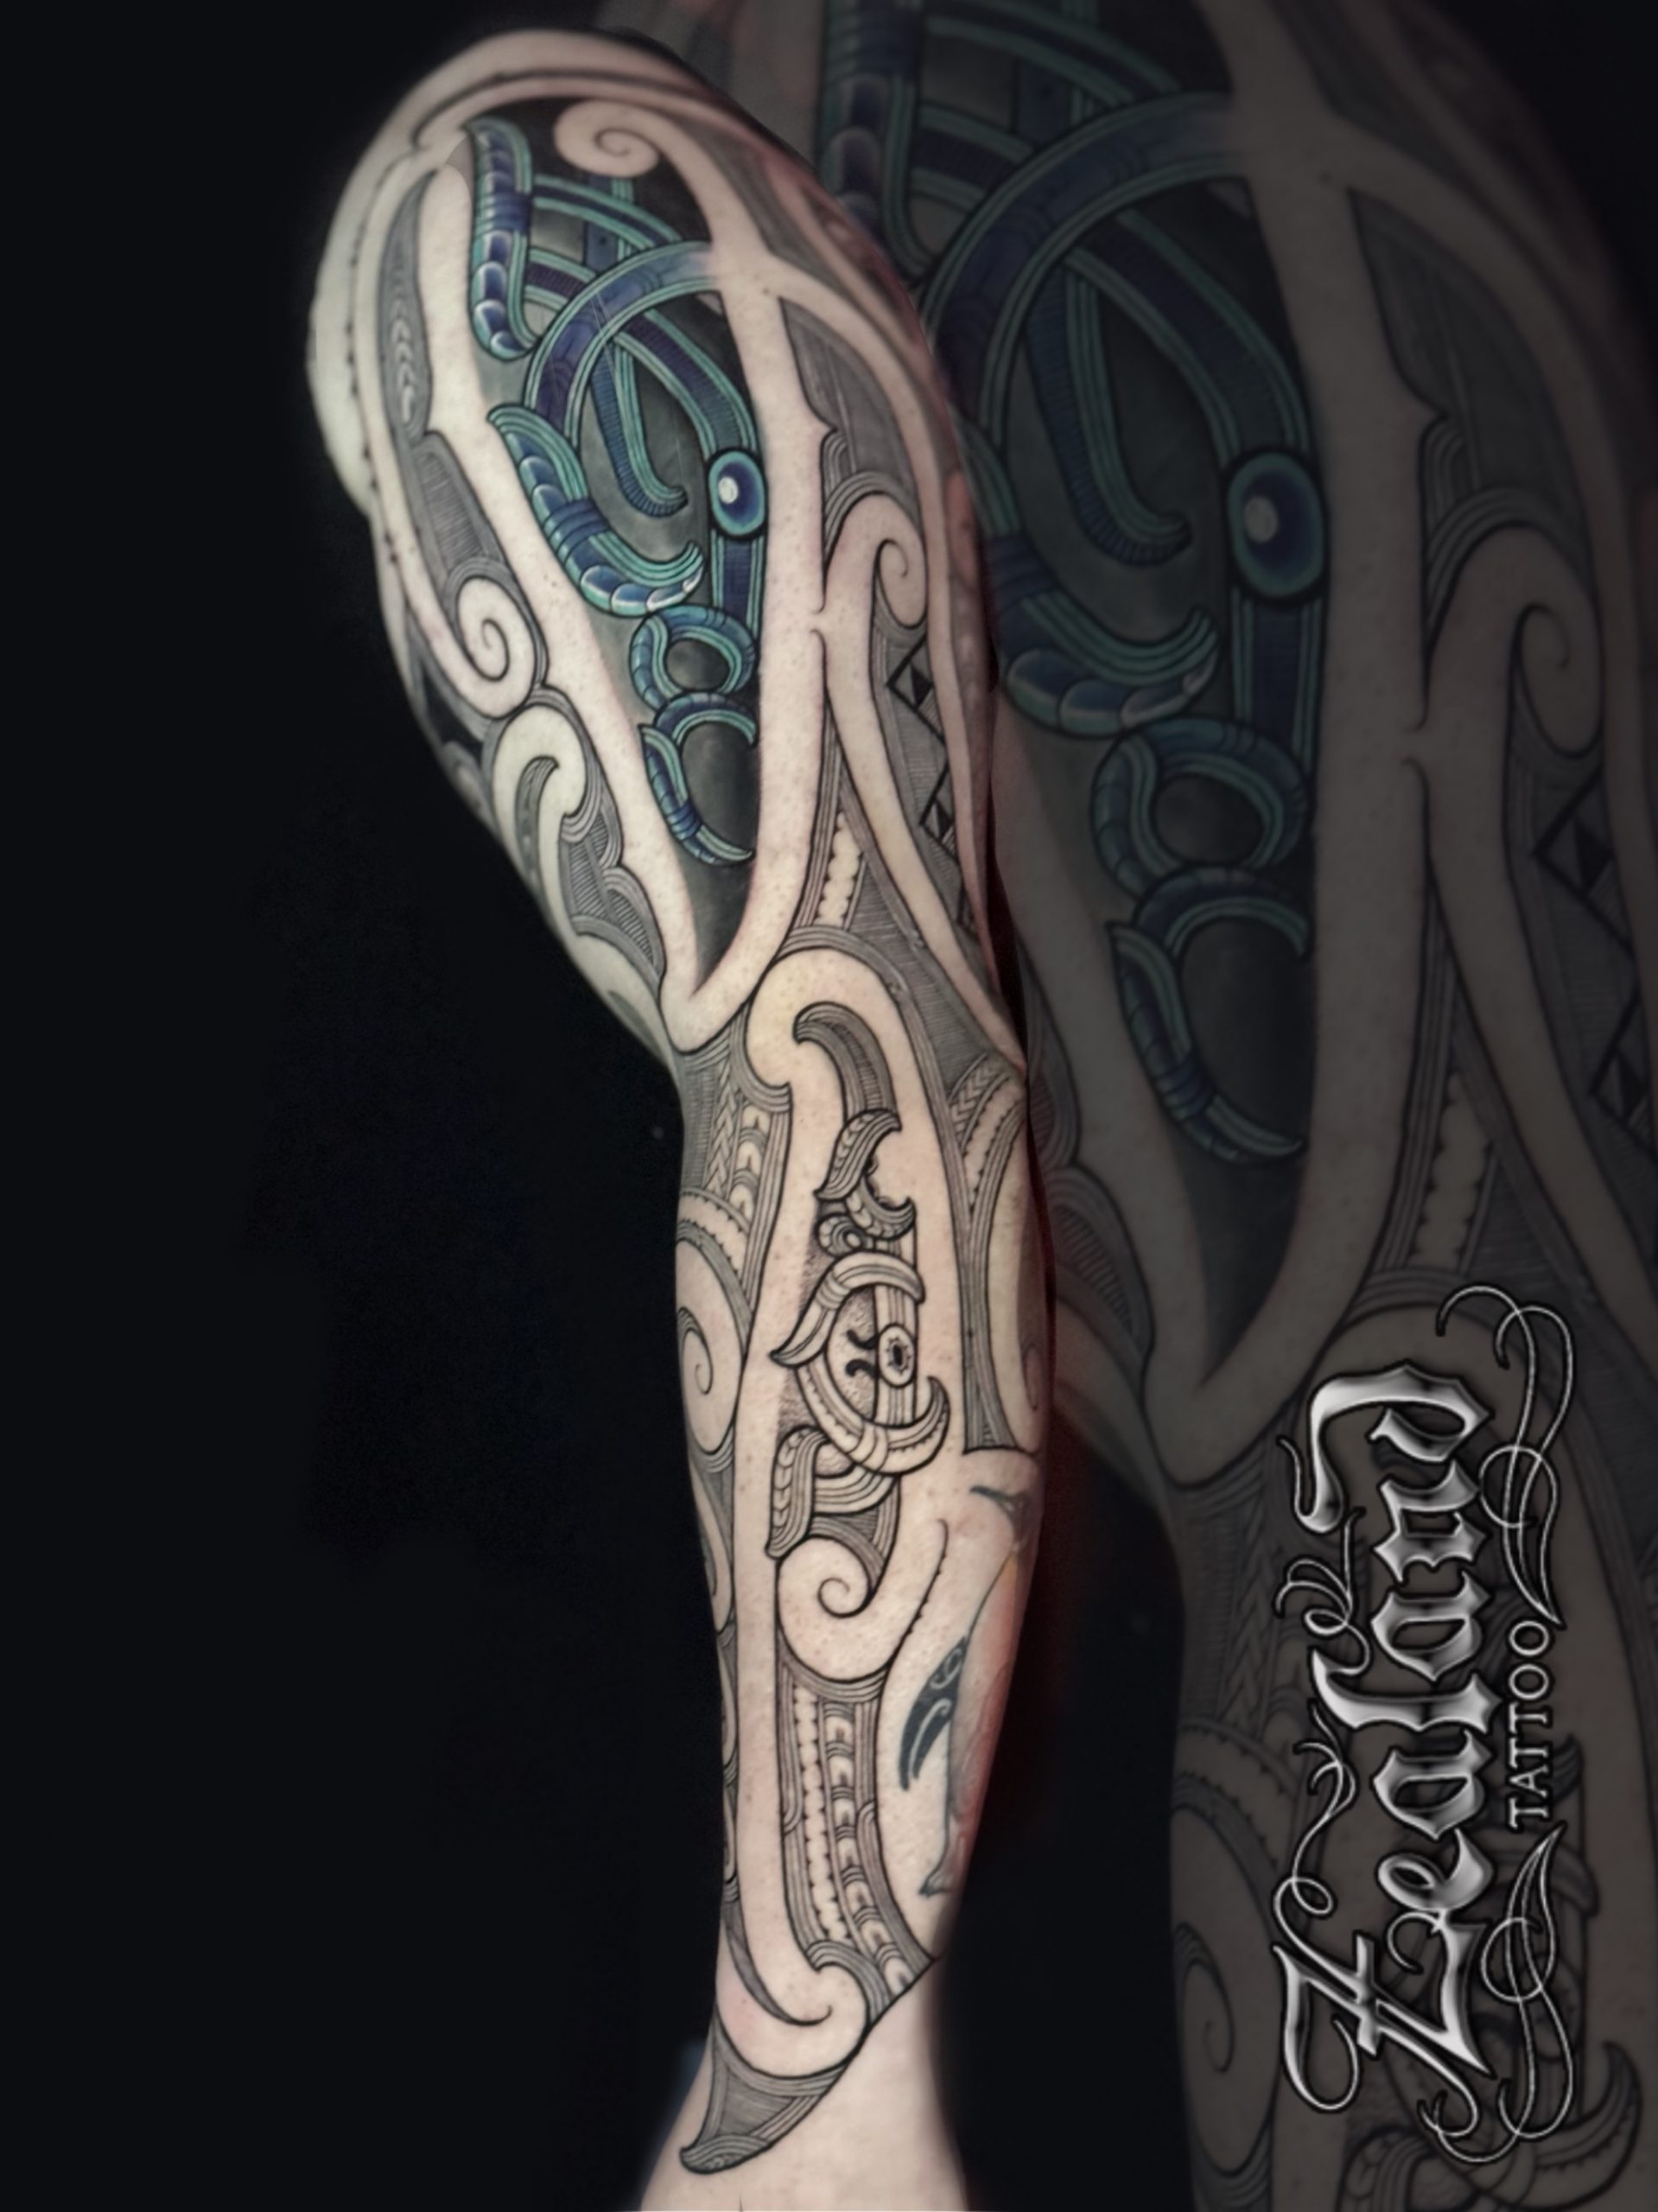 Janser Tattoo - Best Tattoo Ideas Gallery